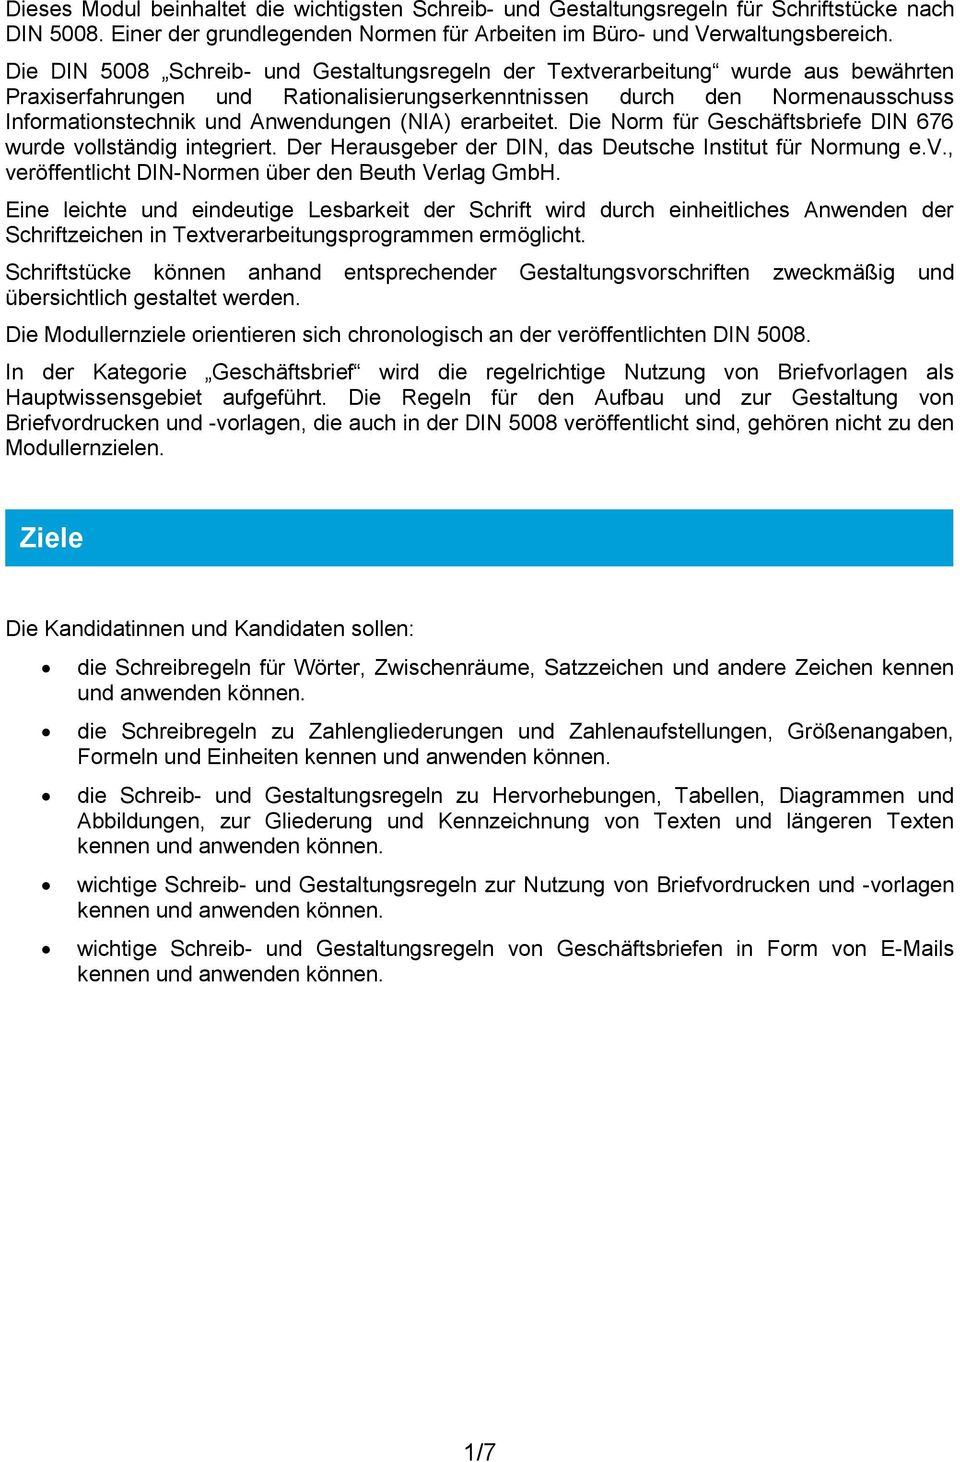 (NIA) erarbeitet. Die Norm für Geschäftsbriefe DIN 676 wurde vollständig integriert. Der Herausgeber der DIN, das Deutsche Institut für Normung e.v., veröffentlicht DIN-Normen über den Beuth Verlag GmbH.